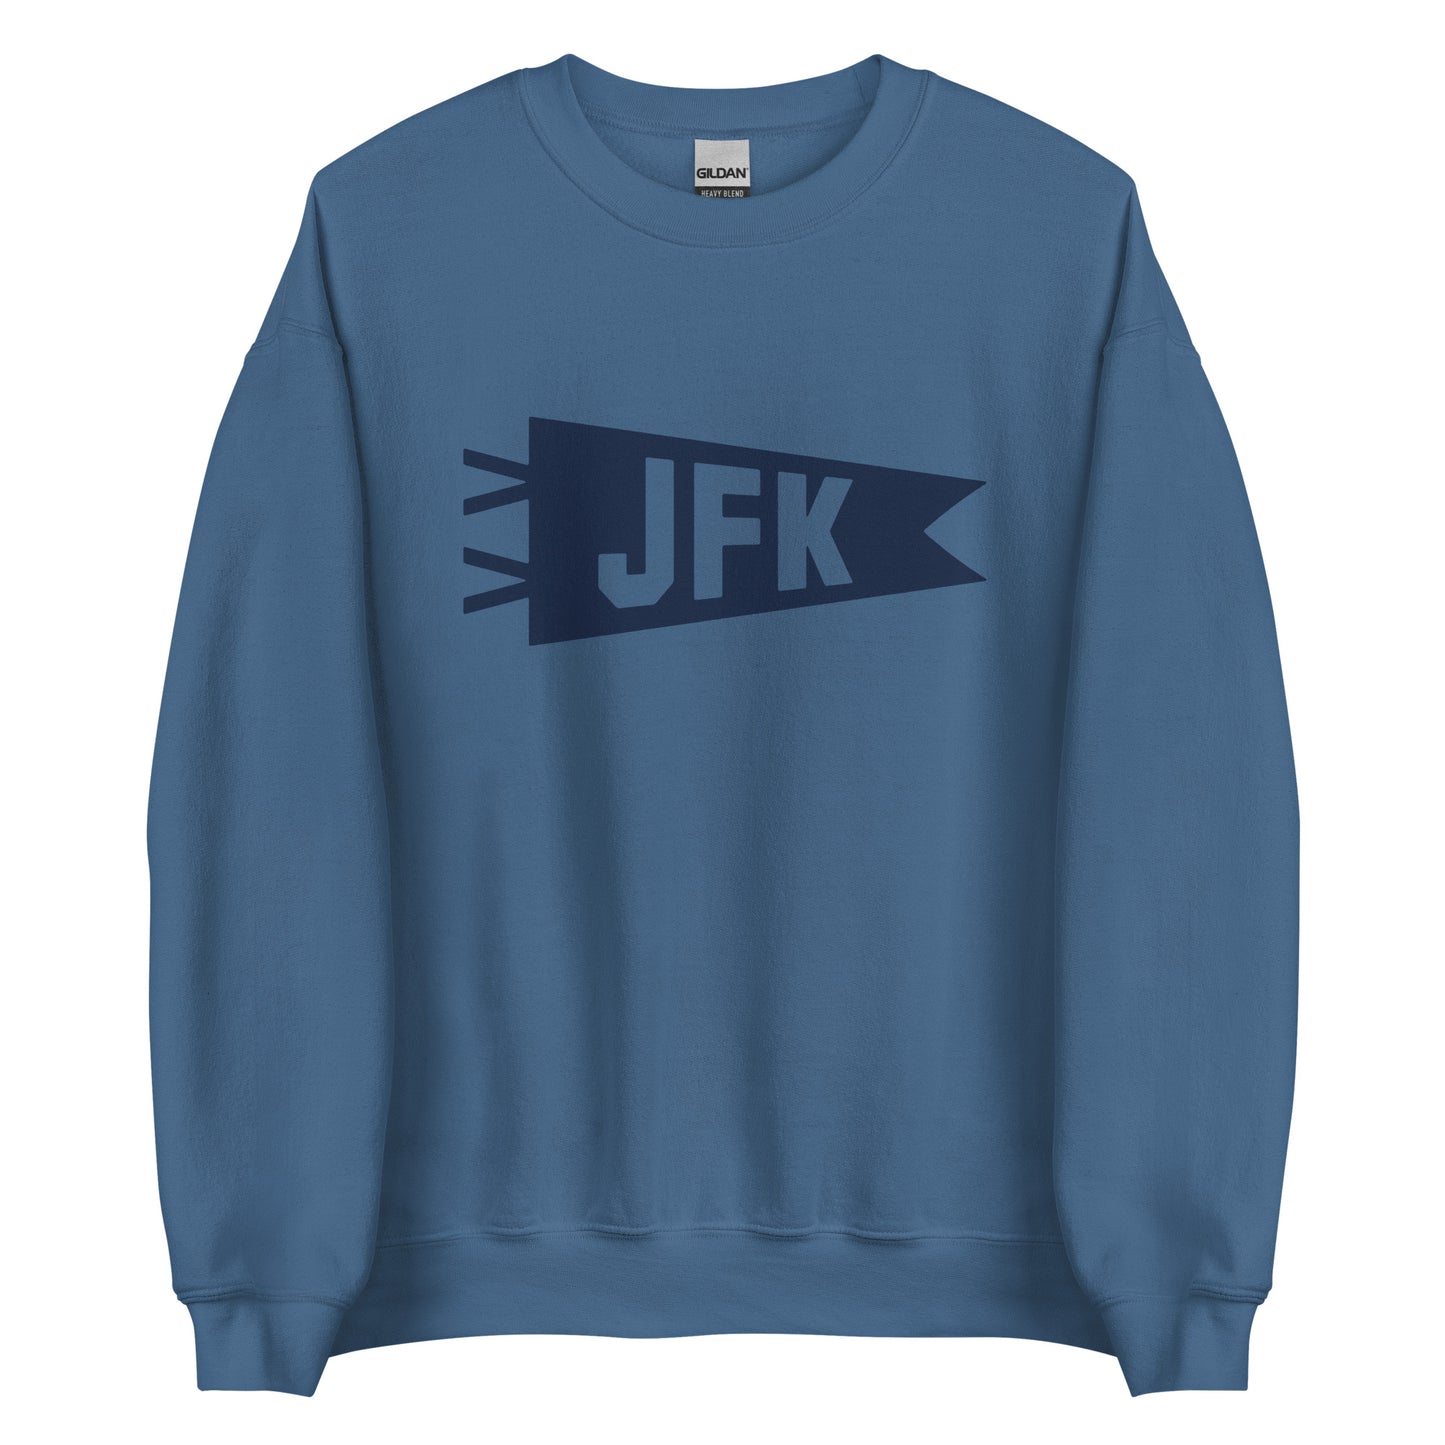 Airport Code Sweatshirt - Navy Blue Graphic • JFK New York City • YHM Designs - Image 05